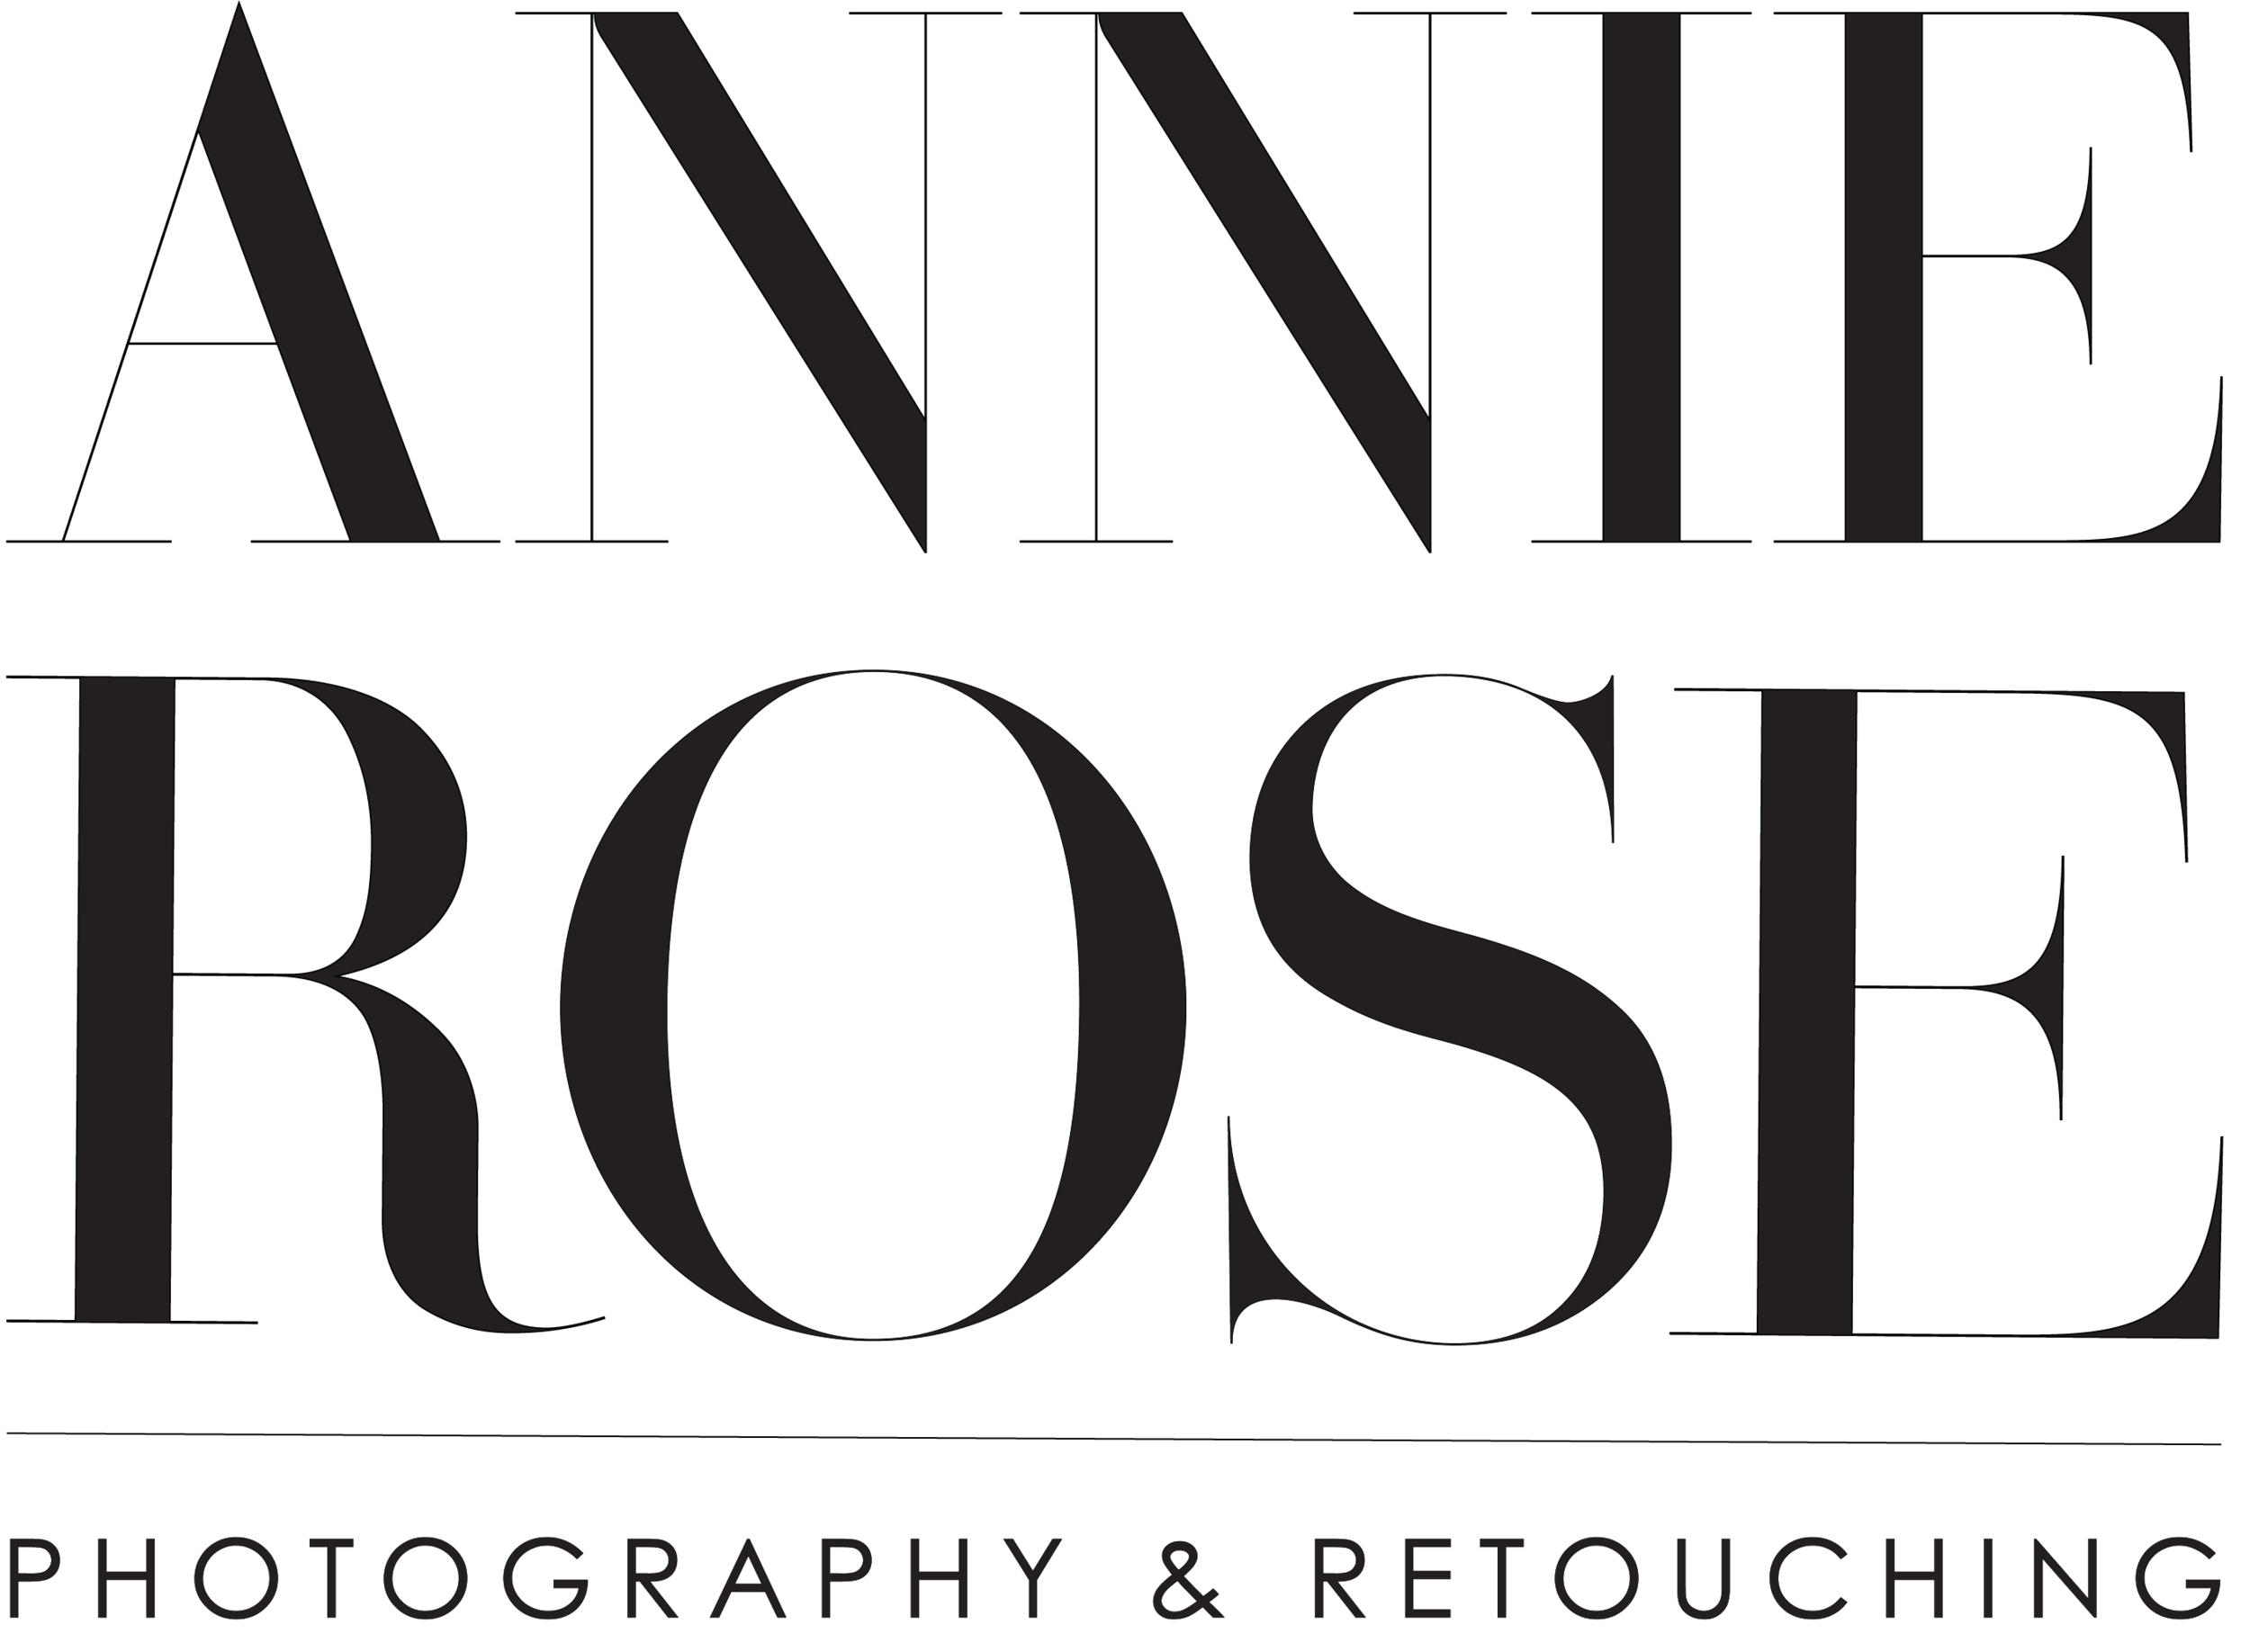 Annie Rose